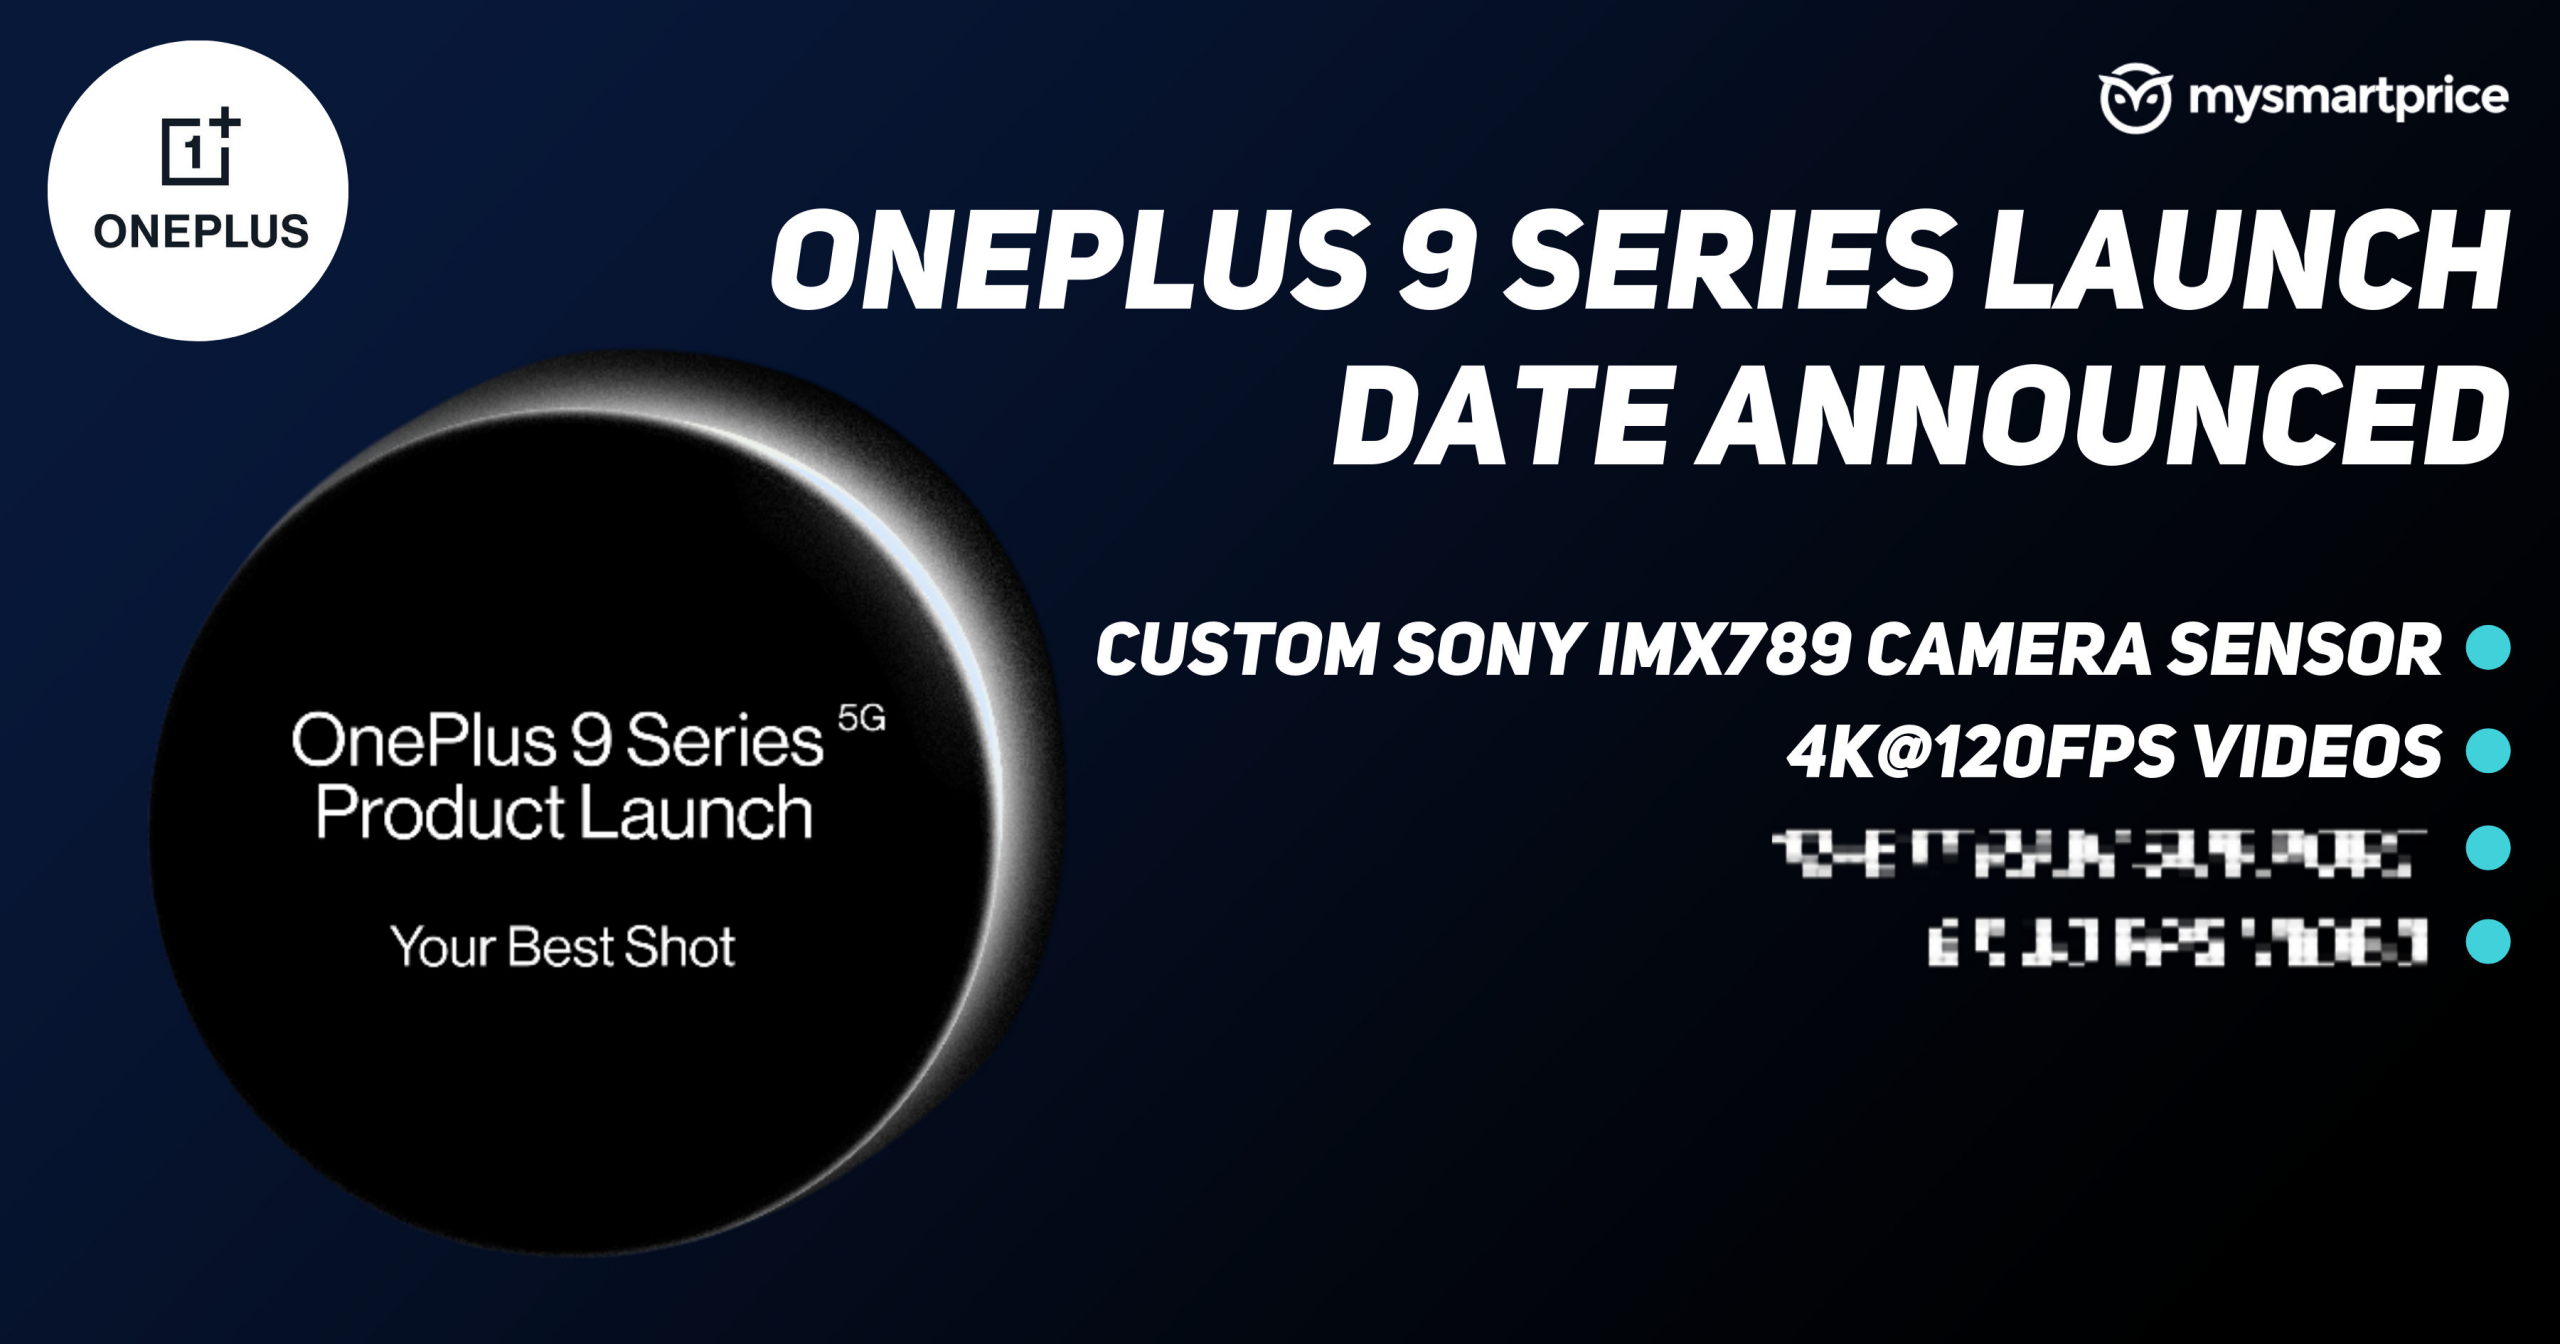 Lanzamiento de la serie OnePlus 9 en India confirmado para el 23 de marzo con ...